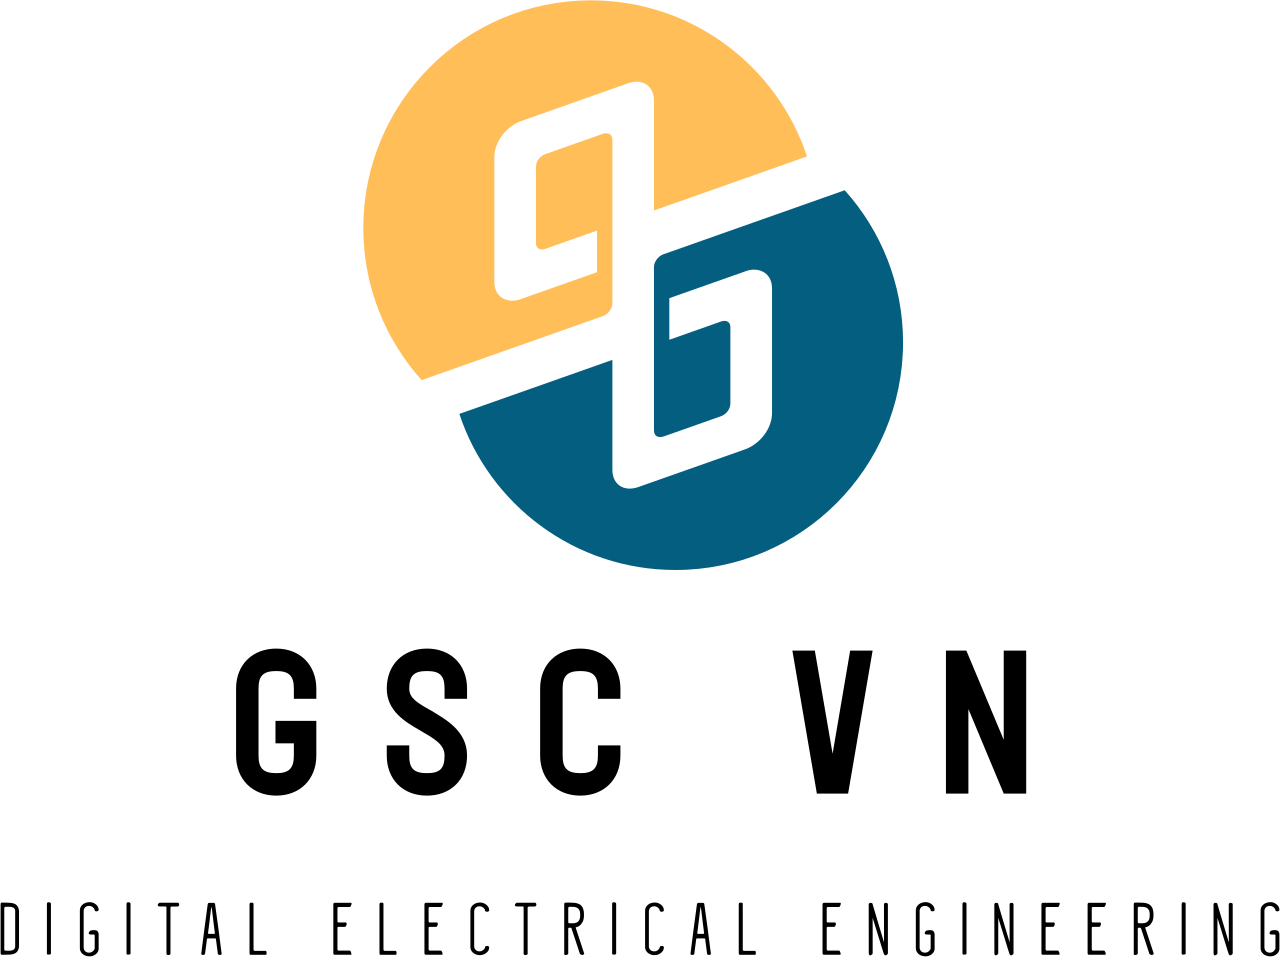 GSC Vn's logo